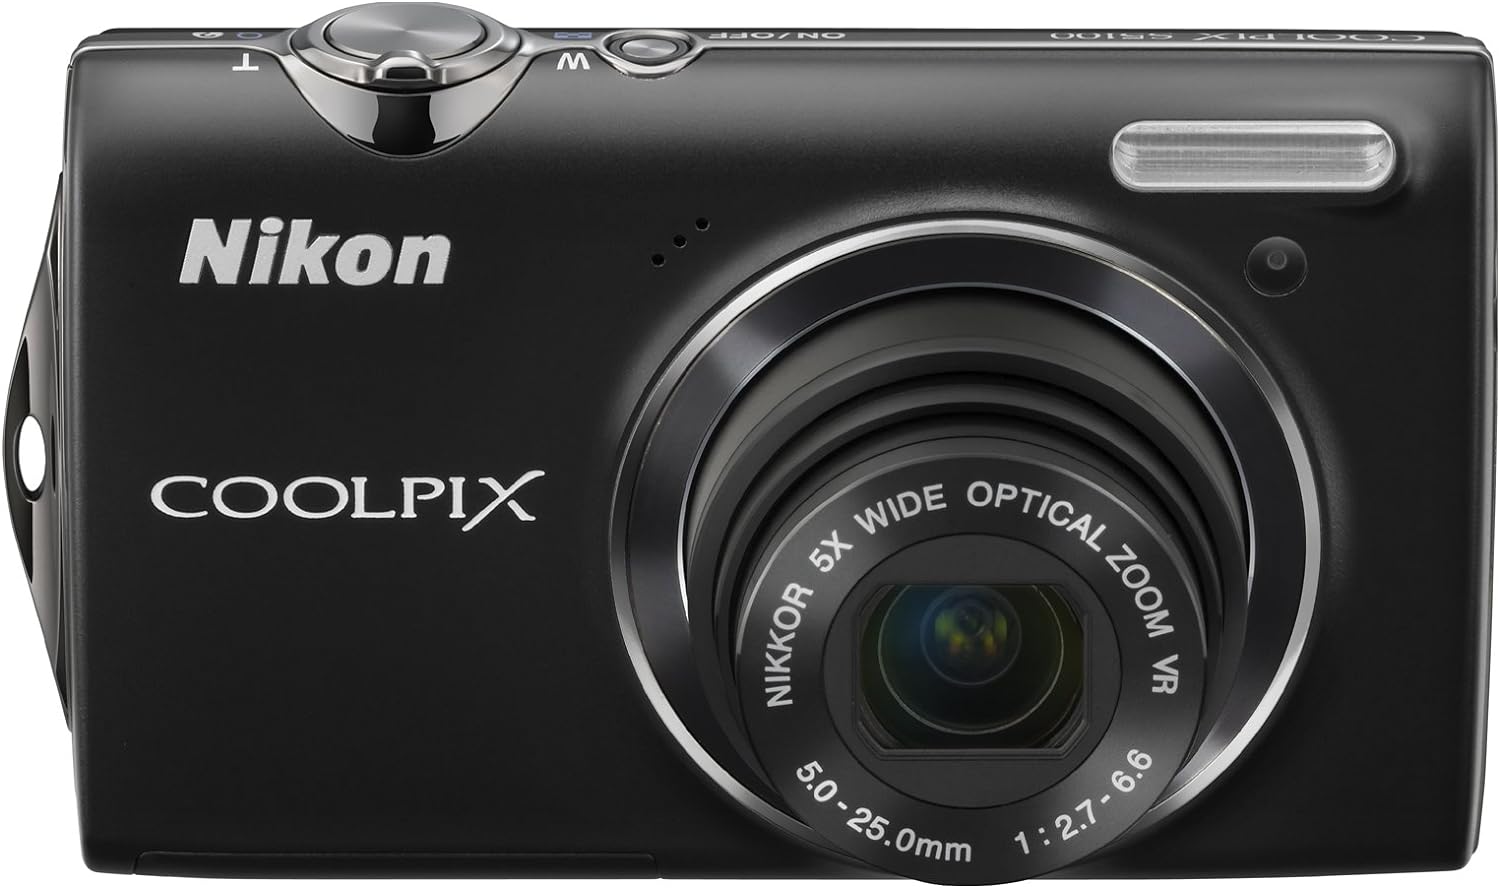 【中古】Nikon デジタルカメラ COOLPIX (クールピクス) S5100 スマートブラック S5100BK 1220万画素 光学5倍ズーム 広角28mm 2.7型液晶